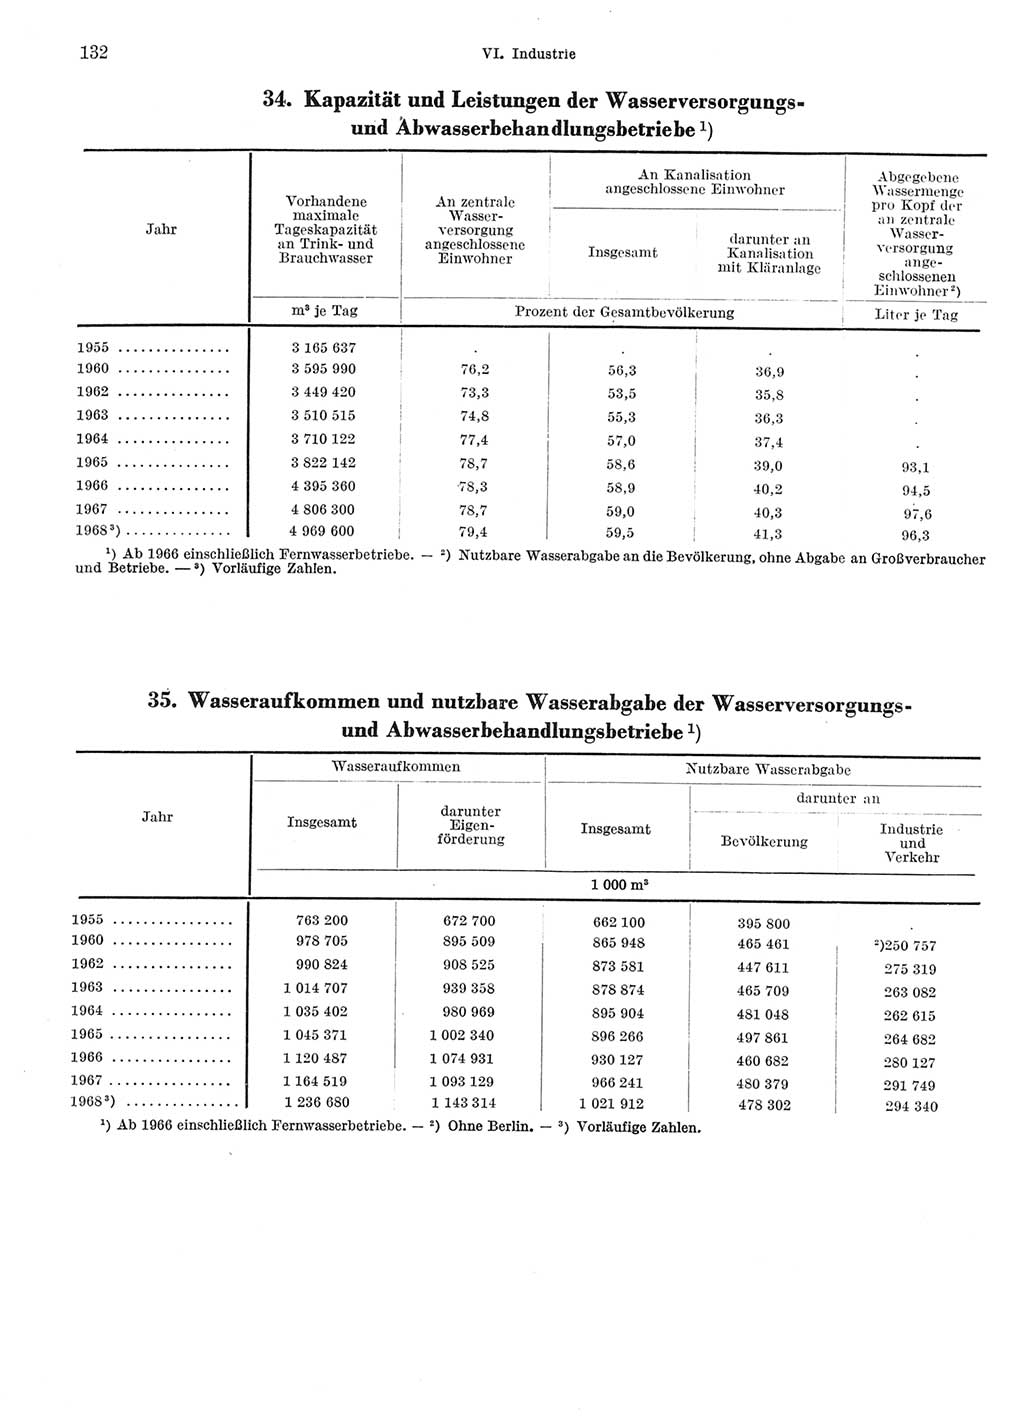 Statistisches Jahrbuch der Deutschen Demokratischen Republik (DDR) 1969, Seite 132 (Stat. Jb. DDR 1969, S. 132)